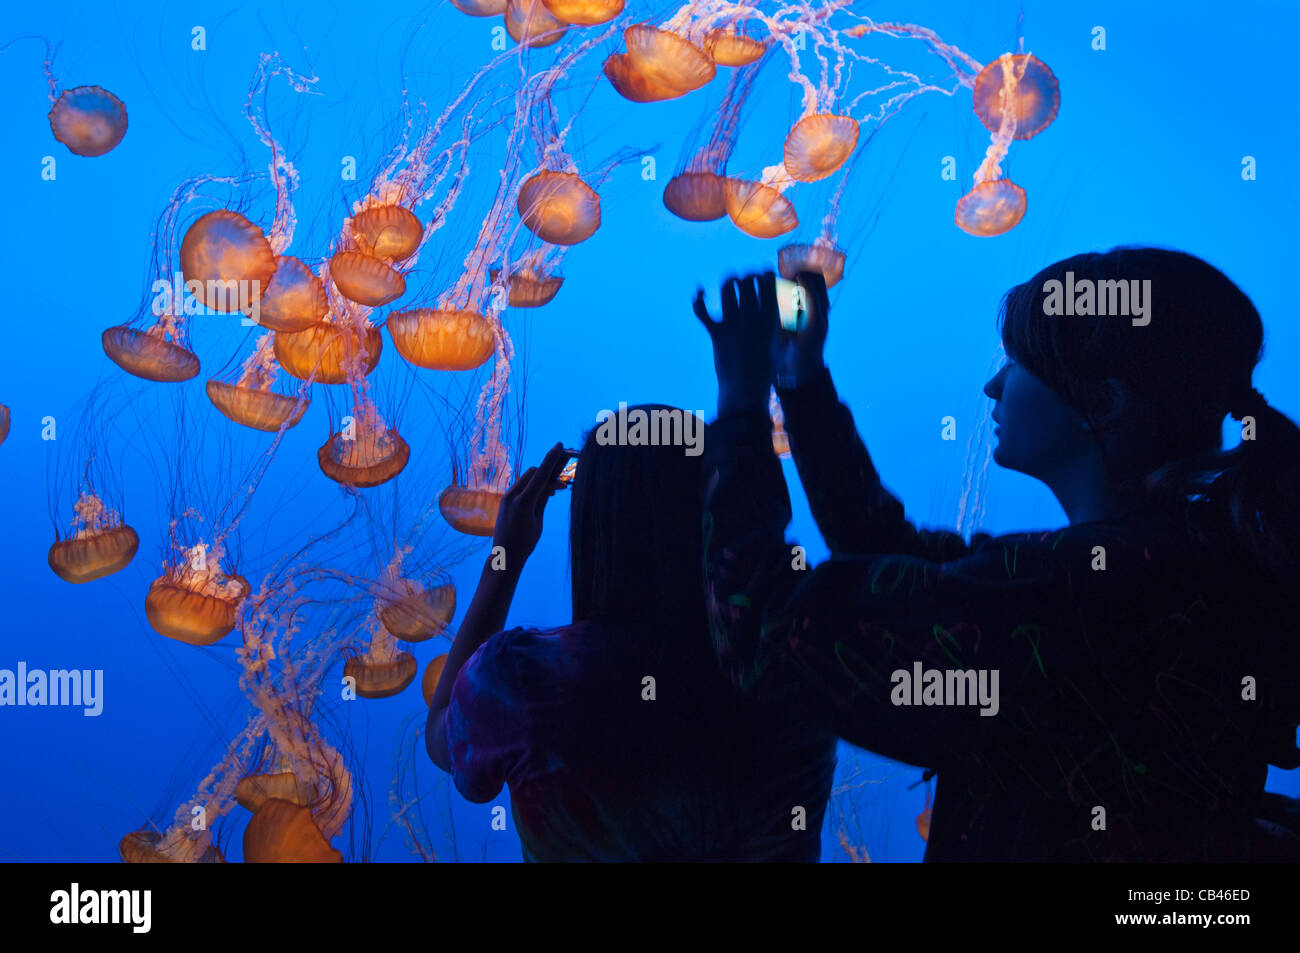 La ortiga de mar del Pacífico, Chrysaora fuscescens es común scyphozoa flotante libre que vive en el Océano Pacífico. Foto de stock